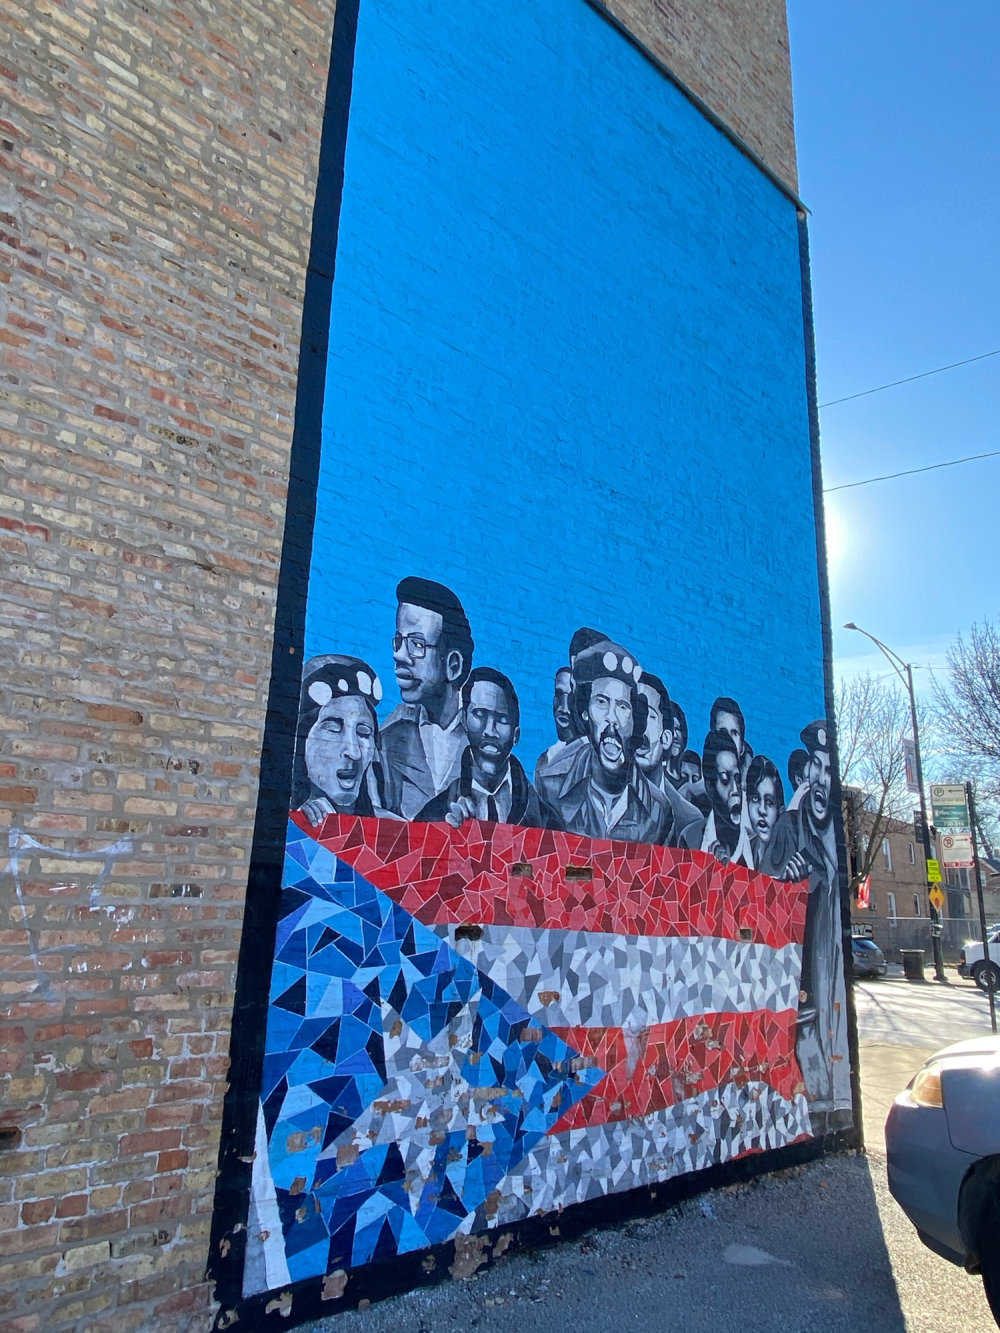 mural in Chicago by artist Luis Raul Muñoz.